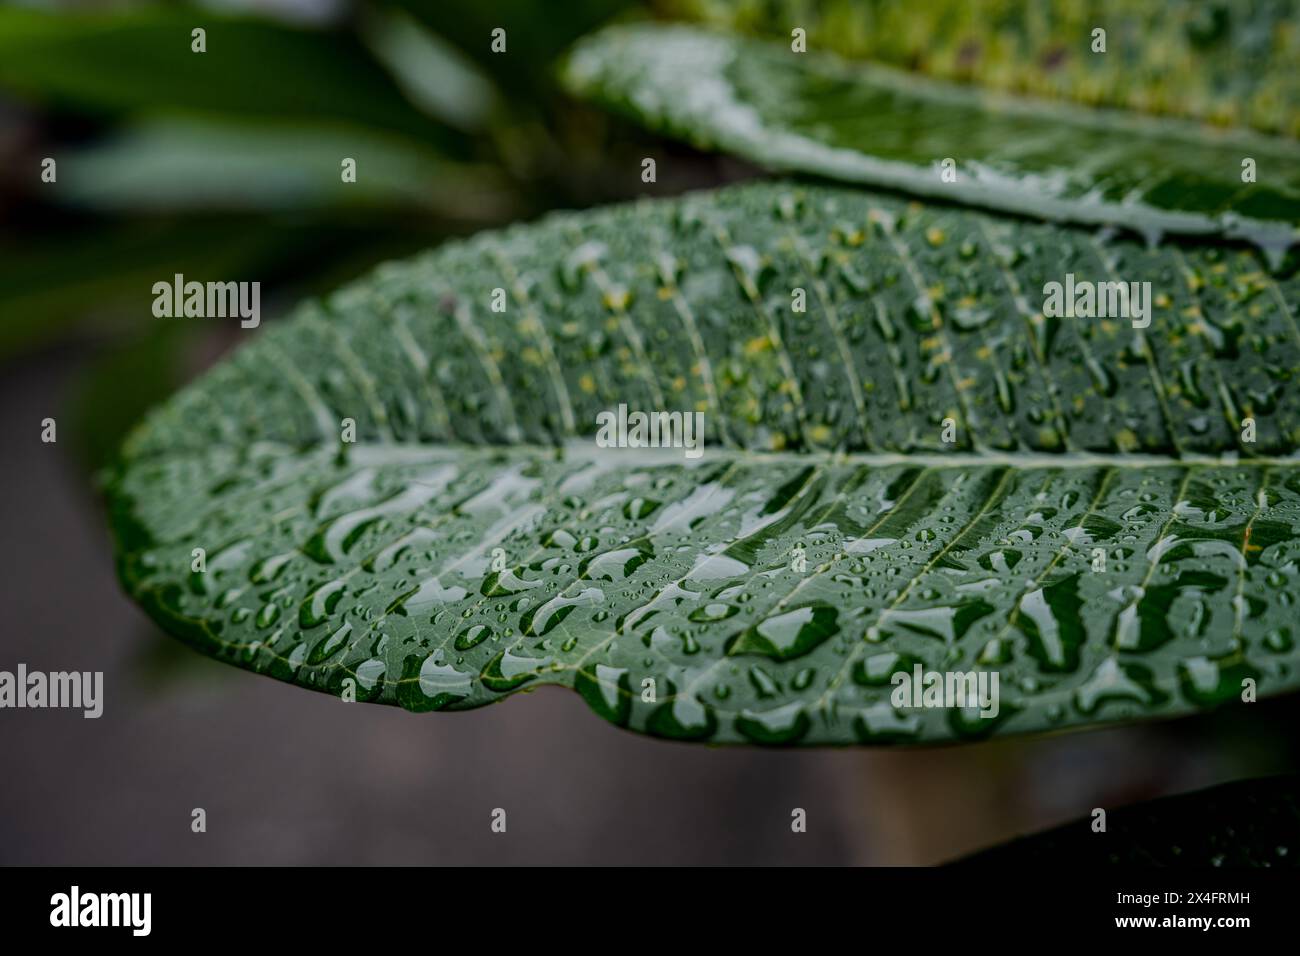 Un'immagine ravvicinata dettagliata che cattura le gocce di pioggia fresche su una foglia verde brillante, mostrando i motivi e le texture intricate della natura. Foto Stock